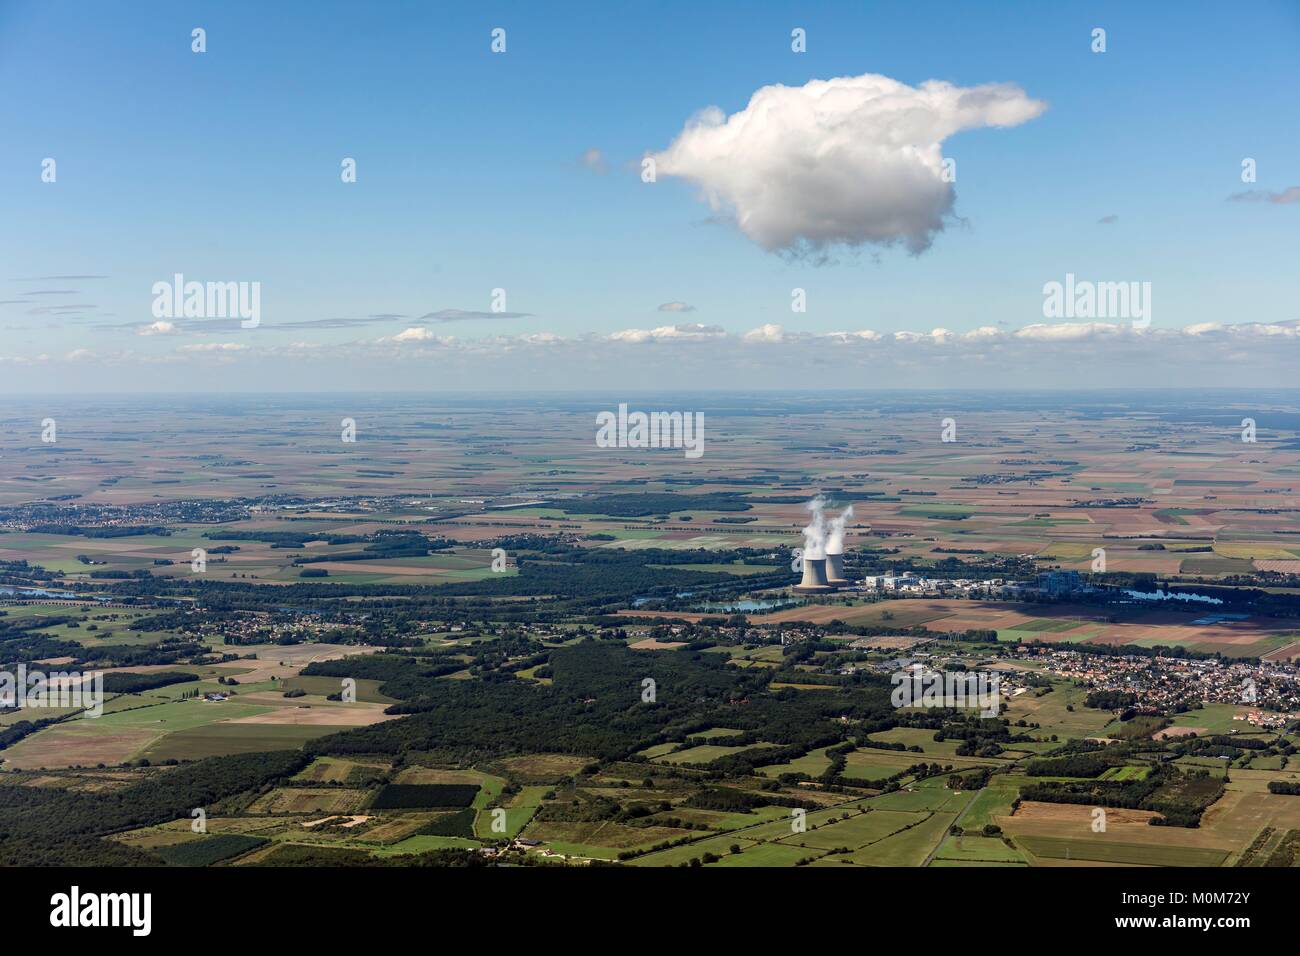 France,Loir et Cher,Saint Laurent Nouan,Saint Laurent des Eaux nuclear power station (aerial view) Stock Photo